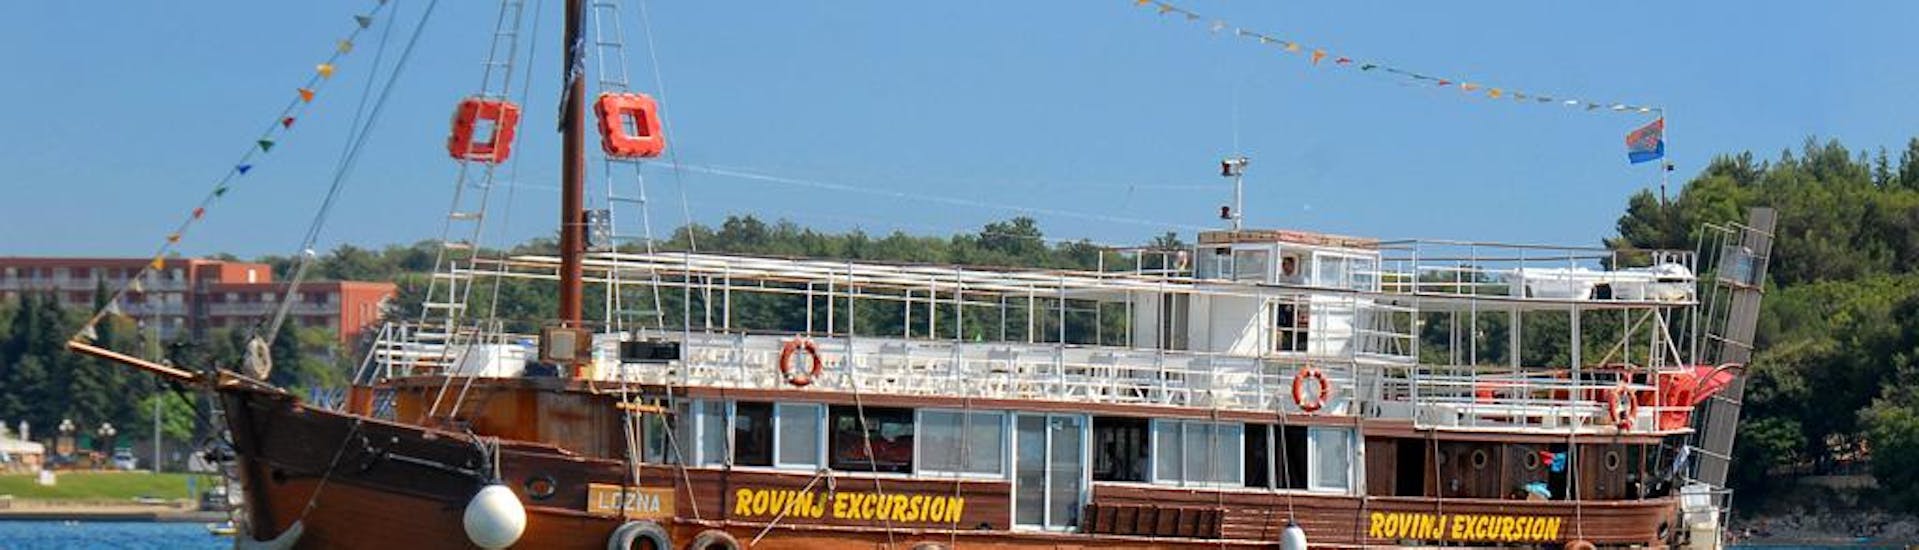 El barco de madera Lozna de Kristina Excursions zarpando.